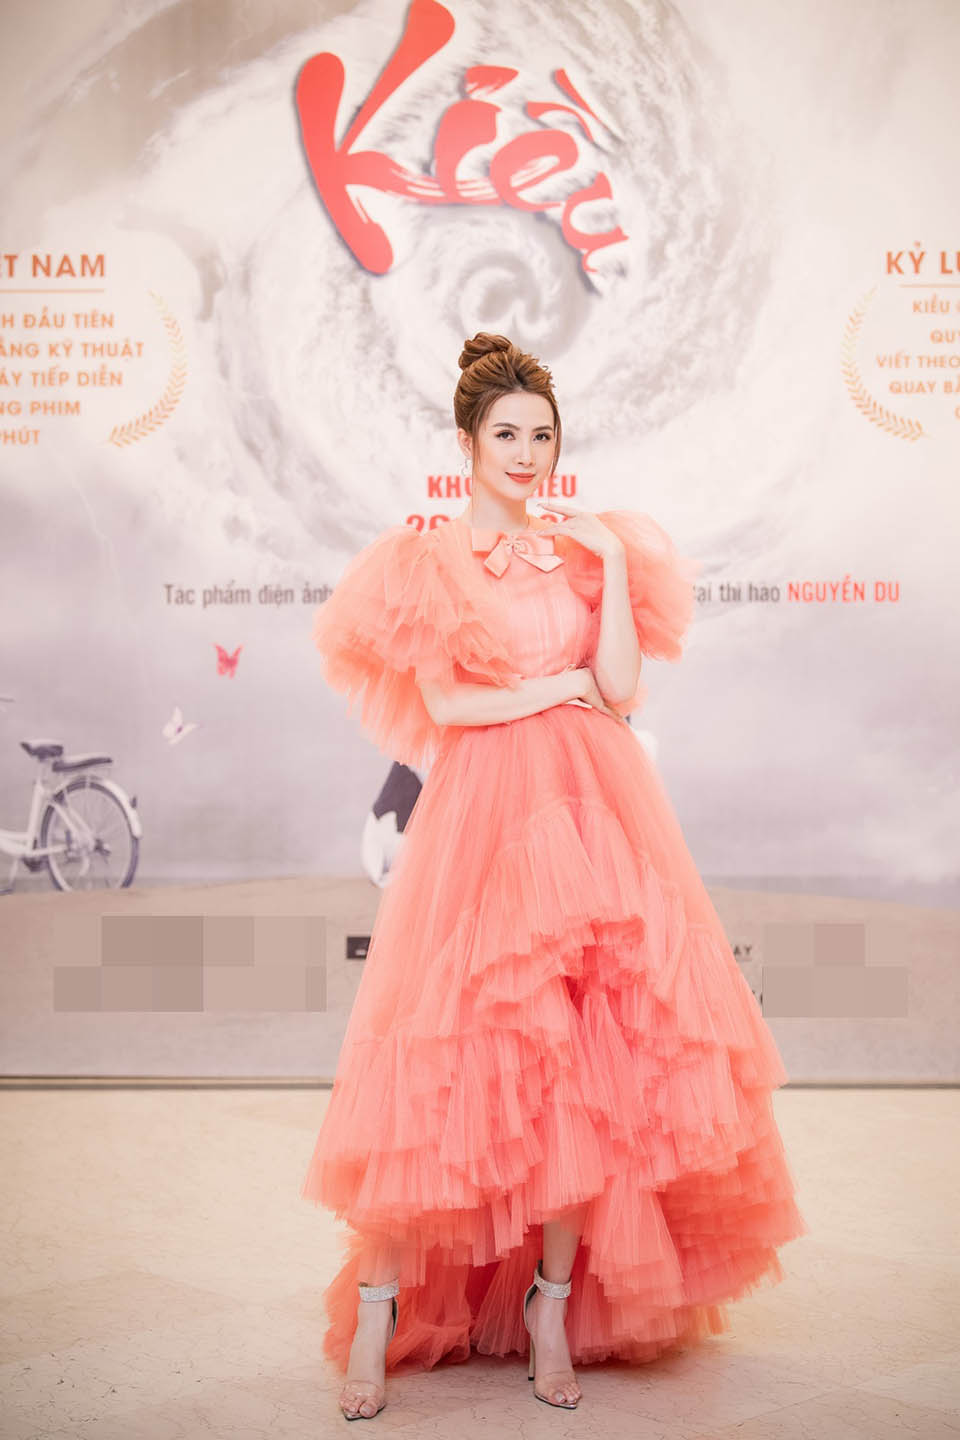 Phan Thị Mơ đảm nhận vai chính phim "Kiều @"